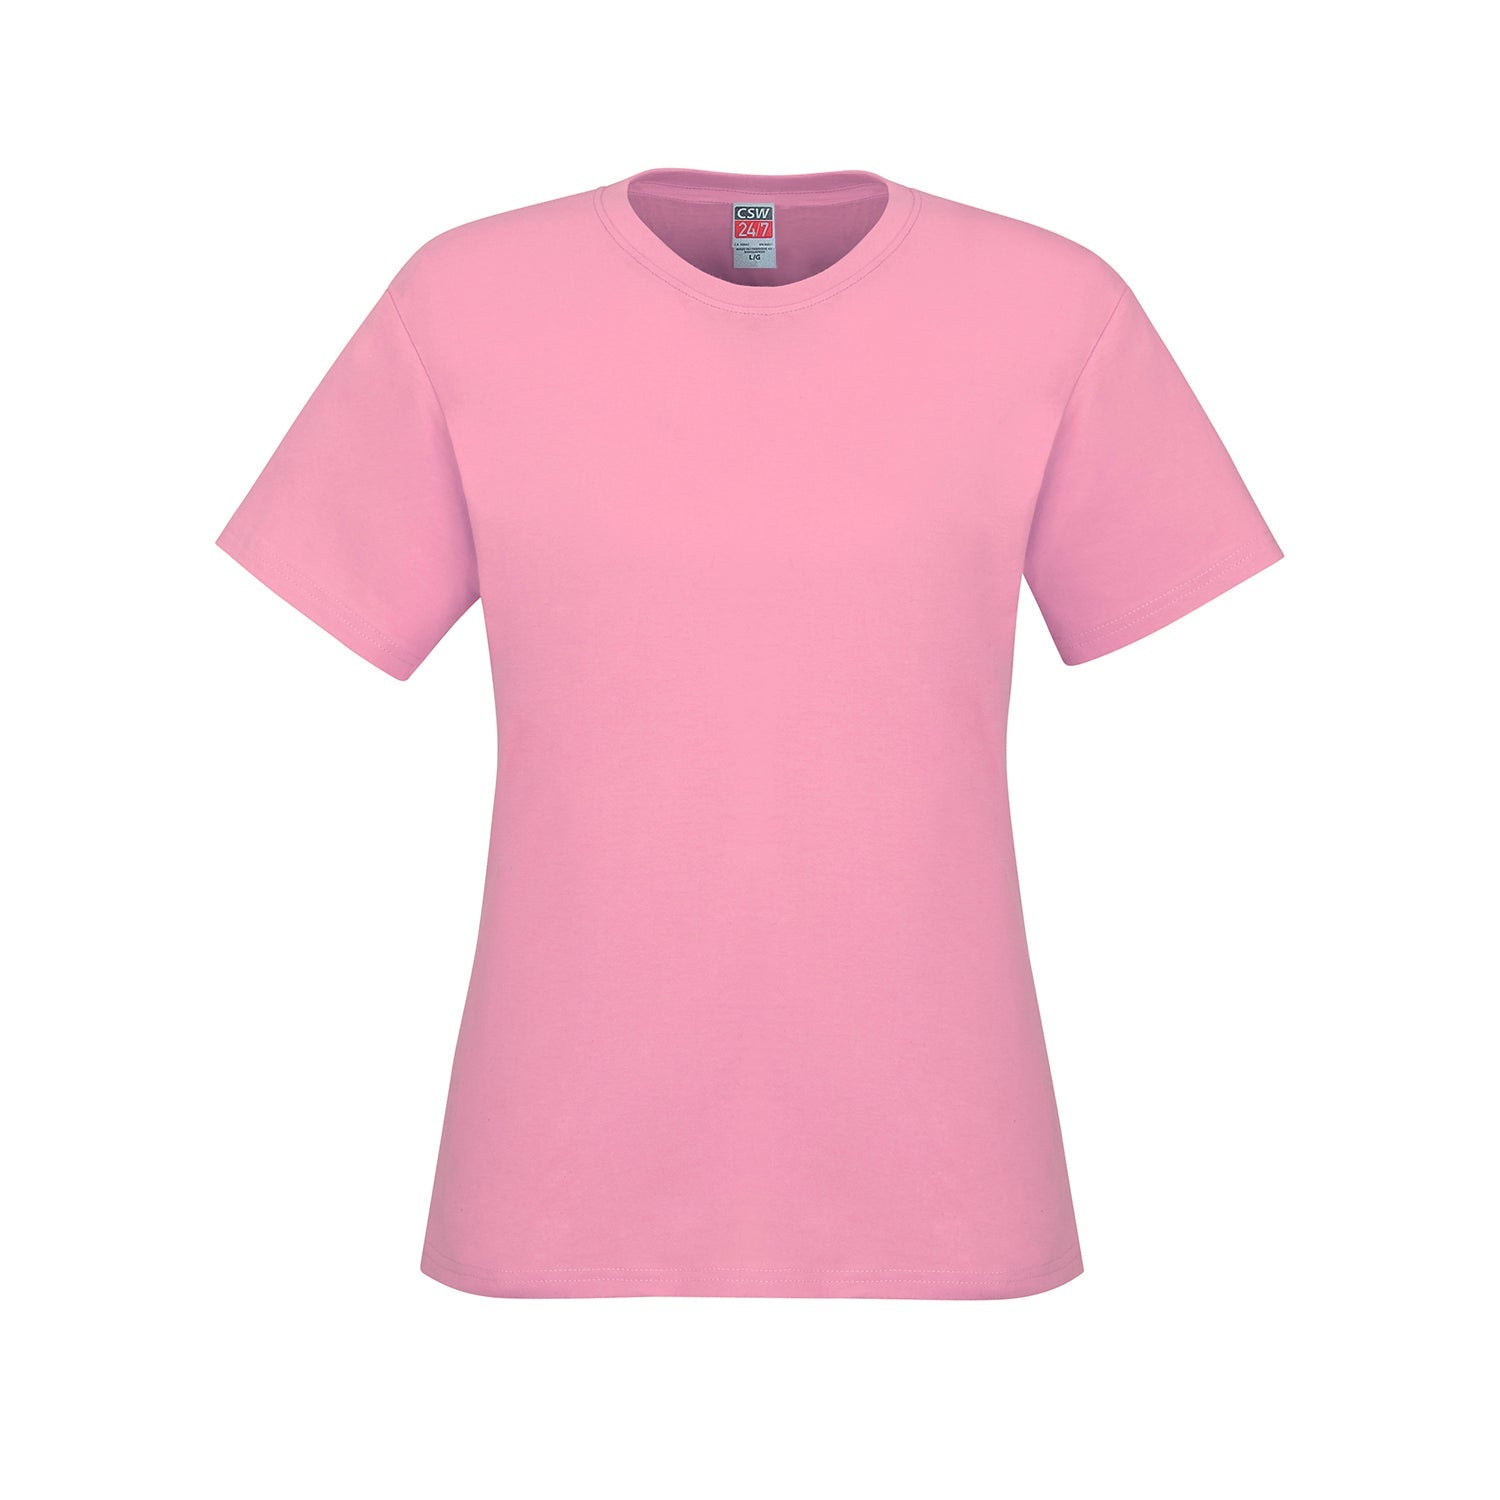 S05611 - Parkour - Ladies Crew Neck Cotton T-Shirt - Pink /